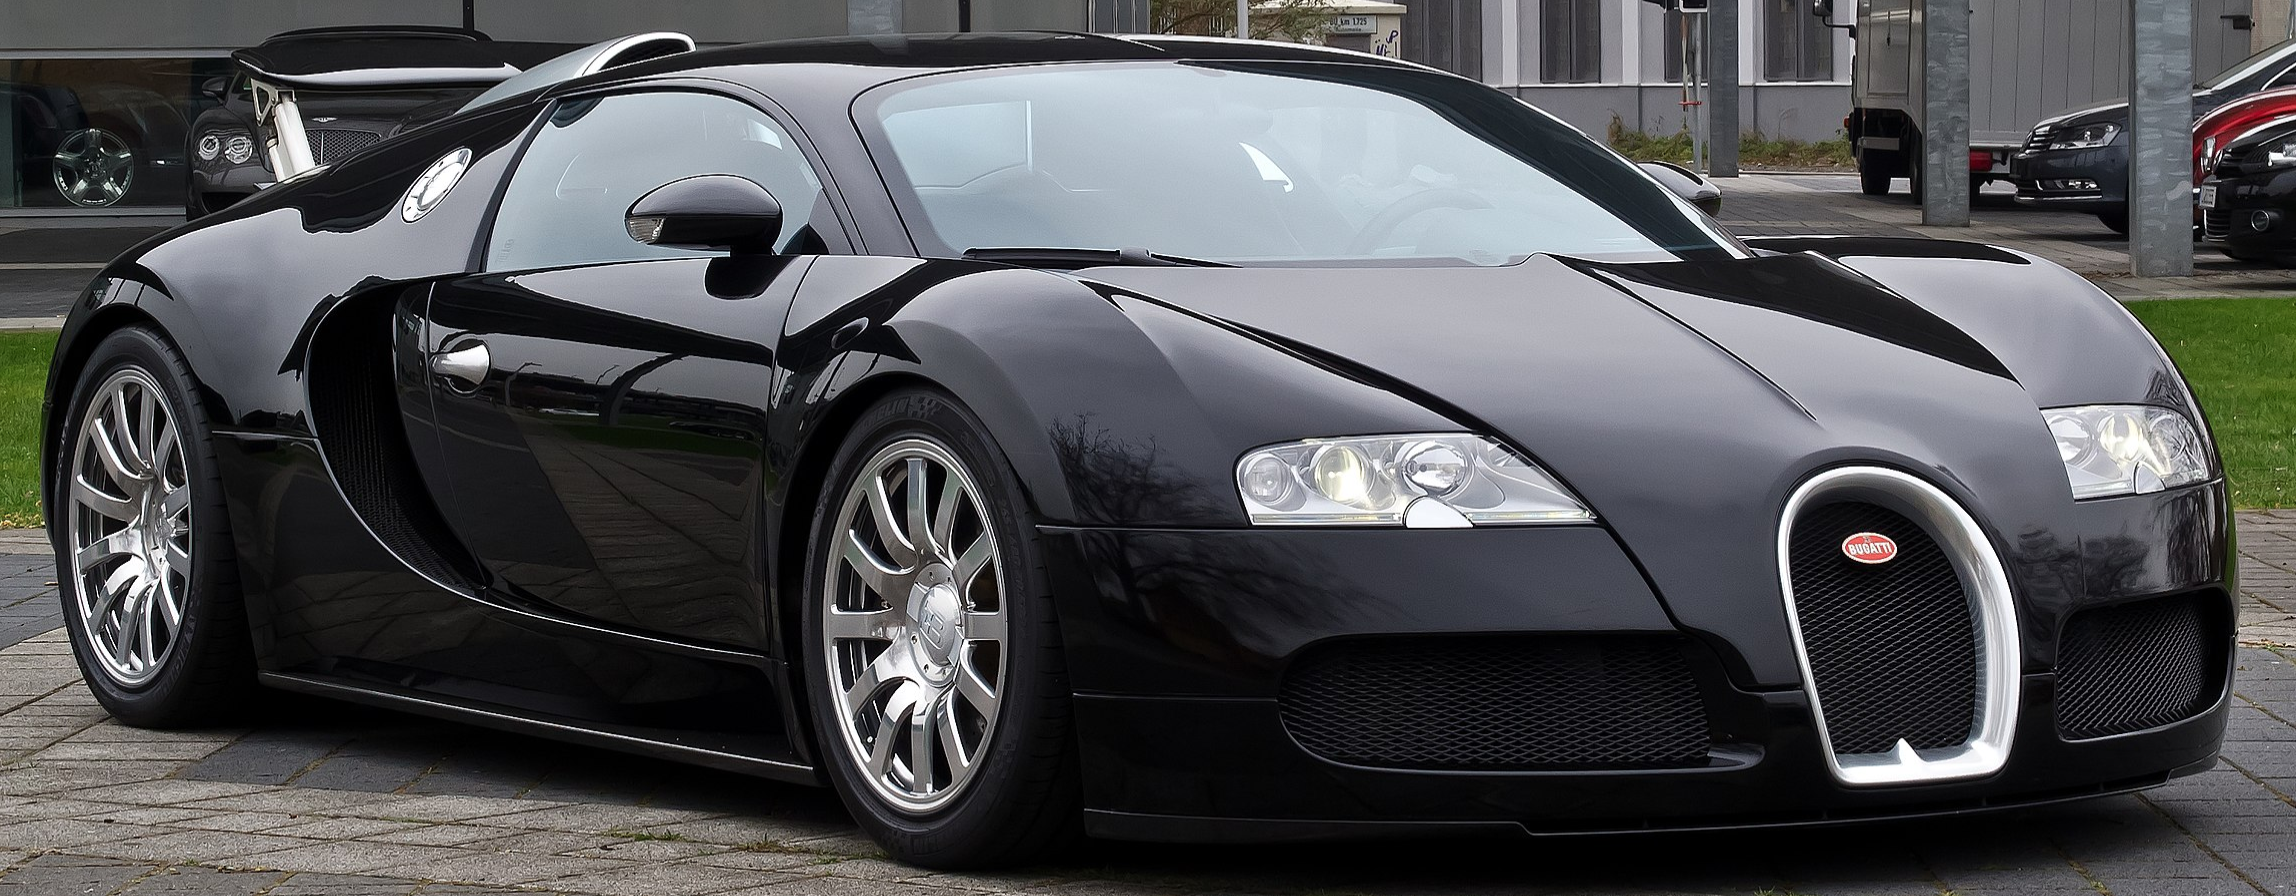 Bugatti EB Veyron 16.4 2005 - 2015 Targa #3